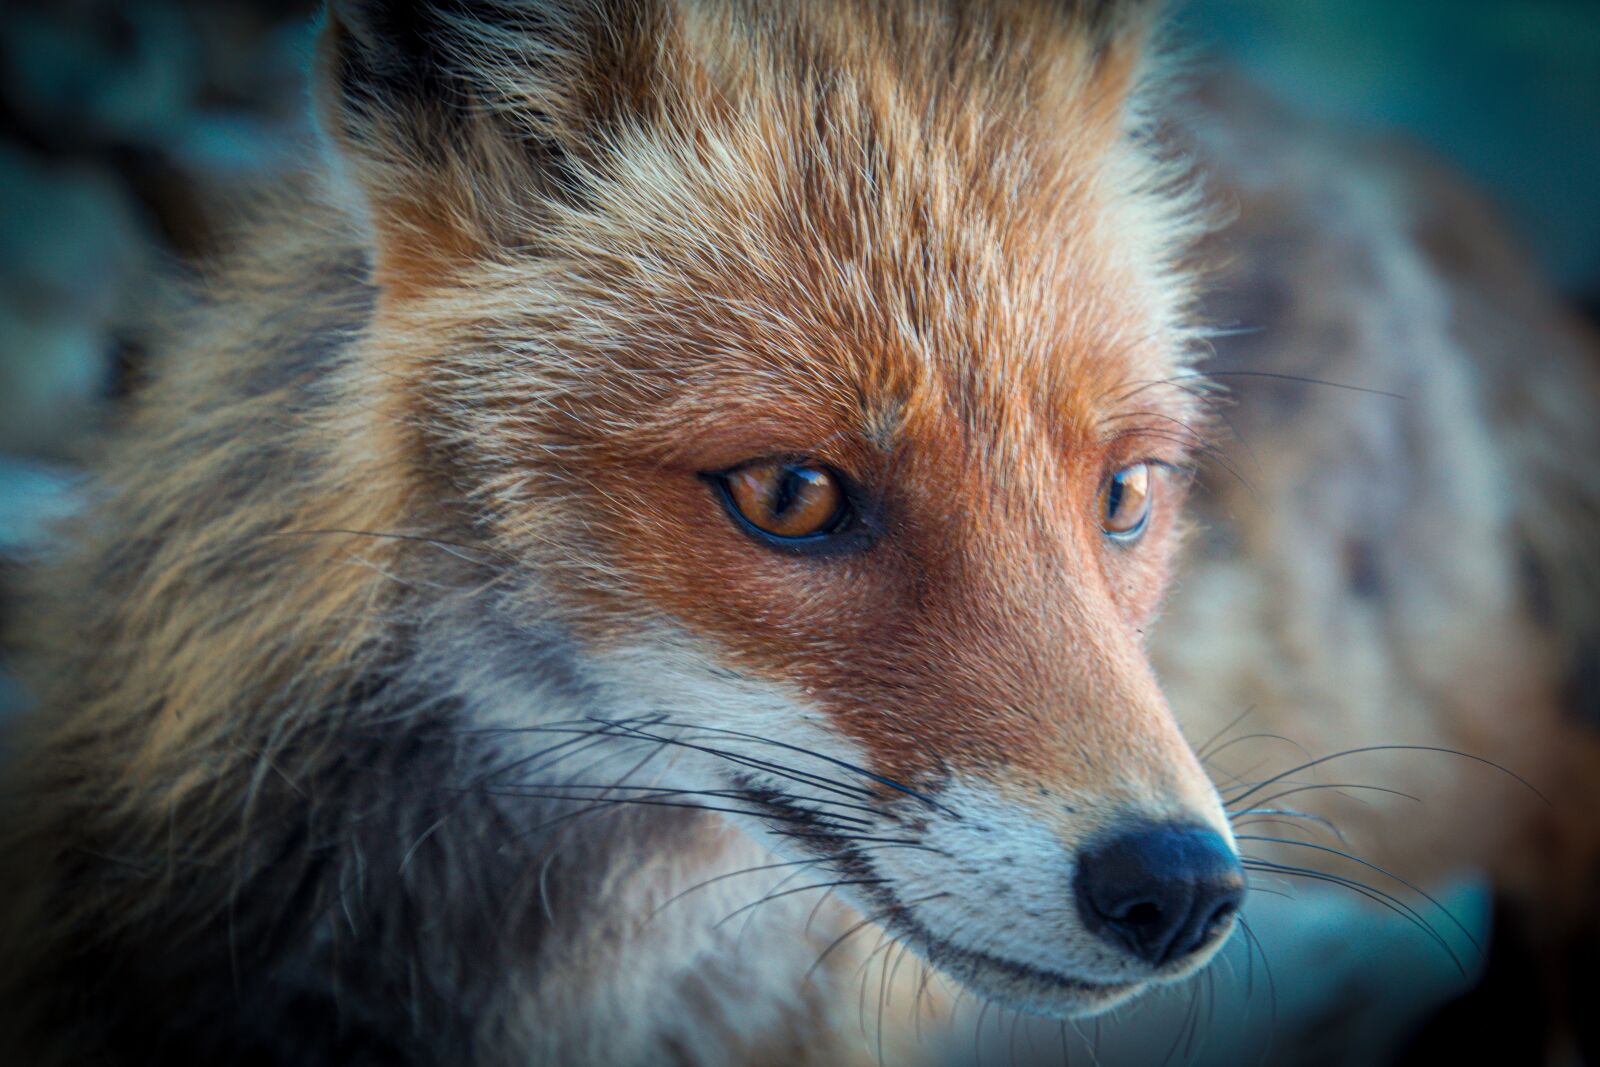 Sony SLT-A65 (SLT-A65V) sample photo. Fox, mammal, animal photography